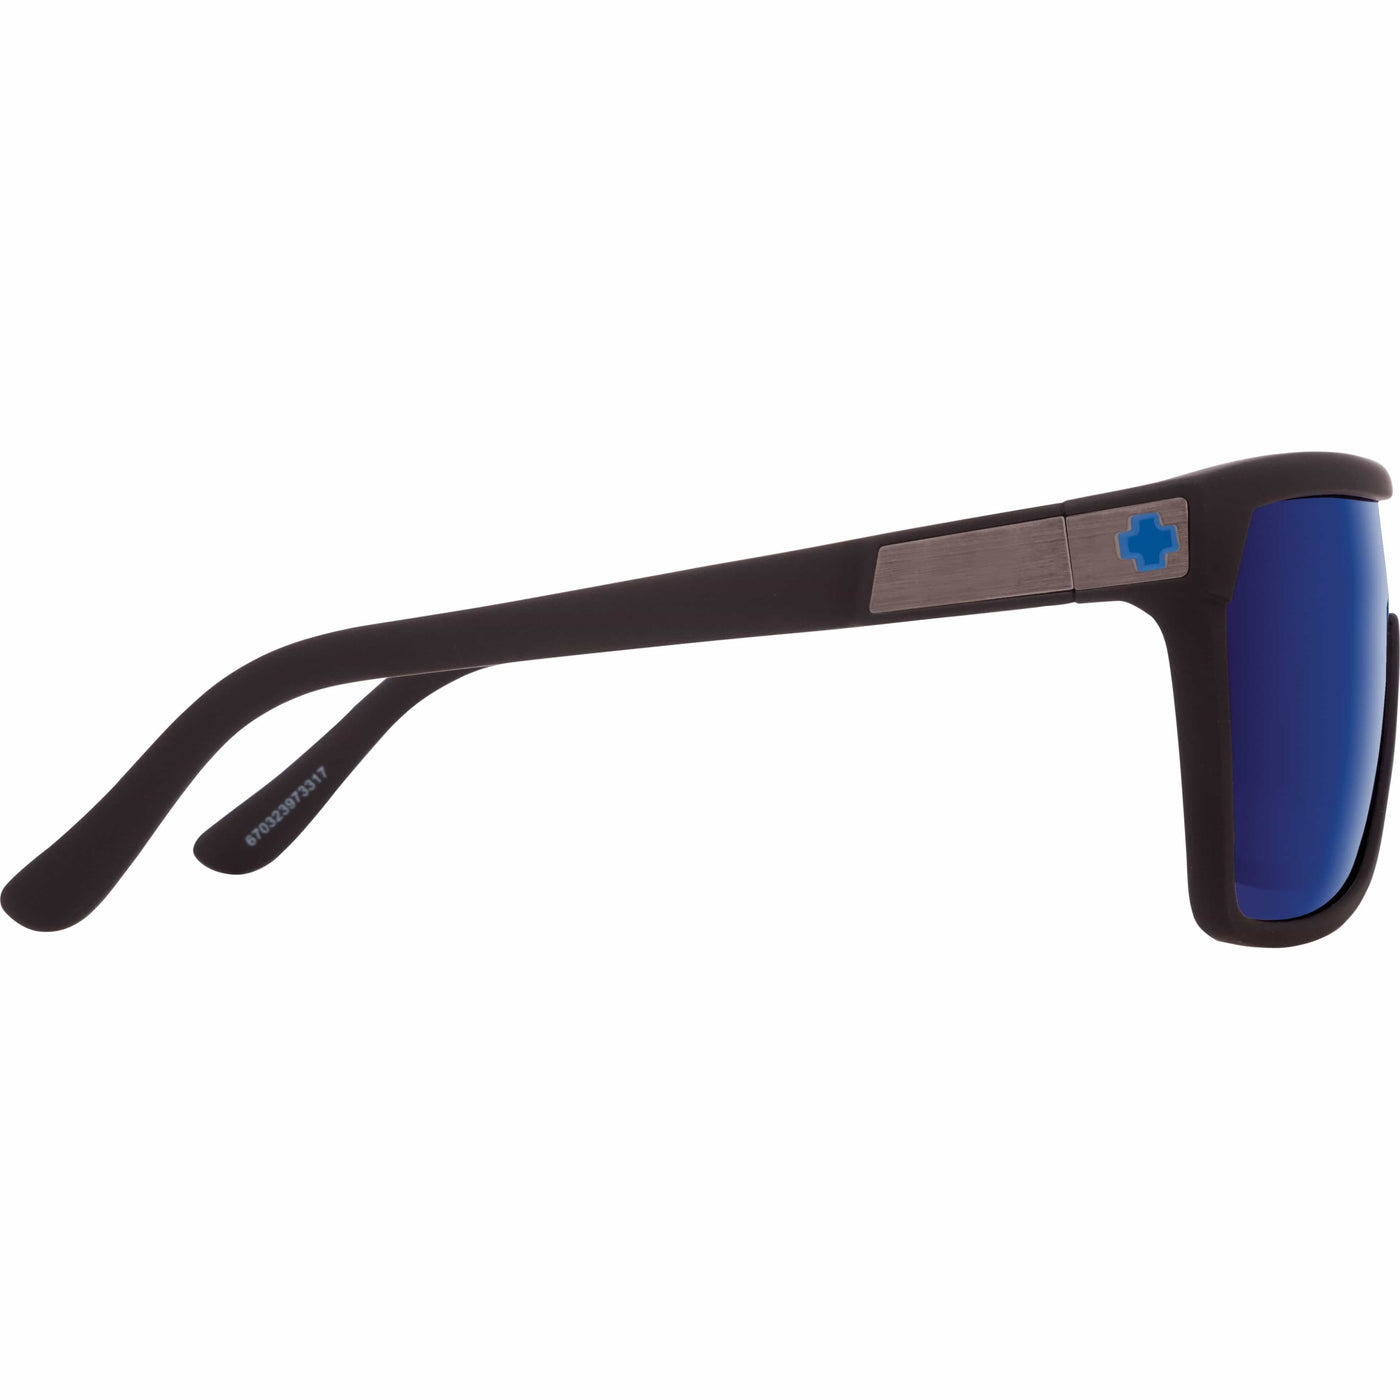 goggle style sunglasses  for men ad women